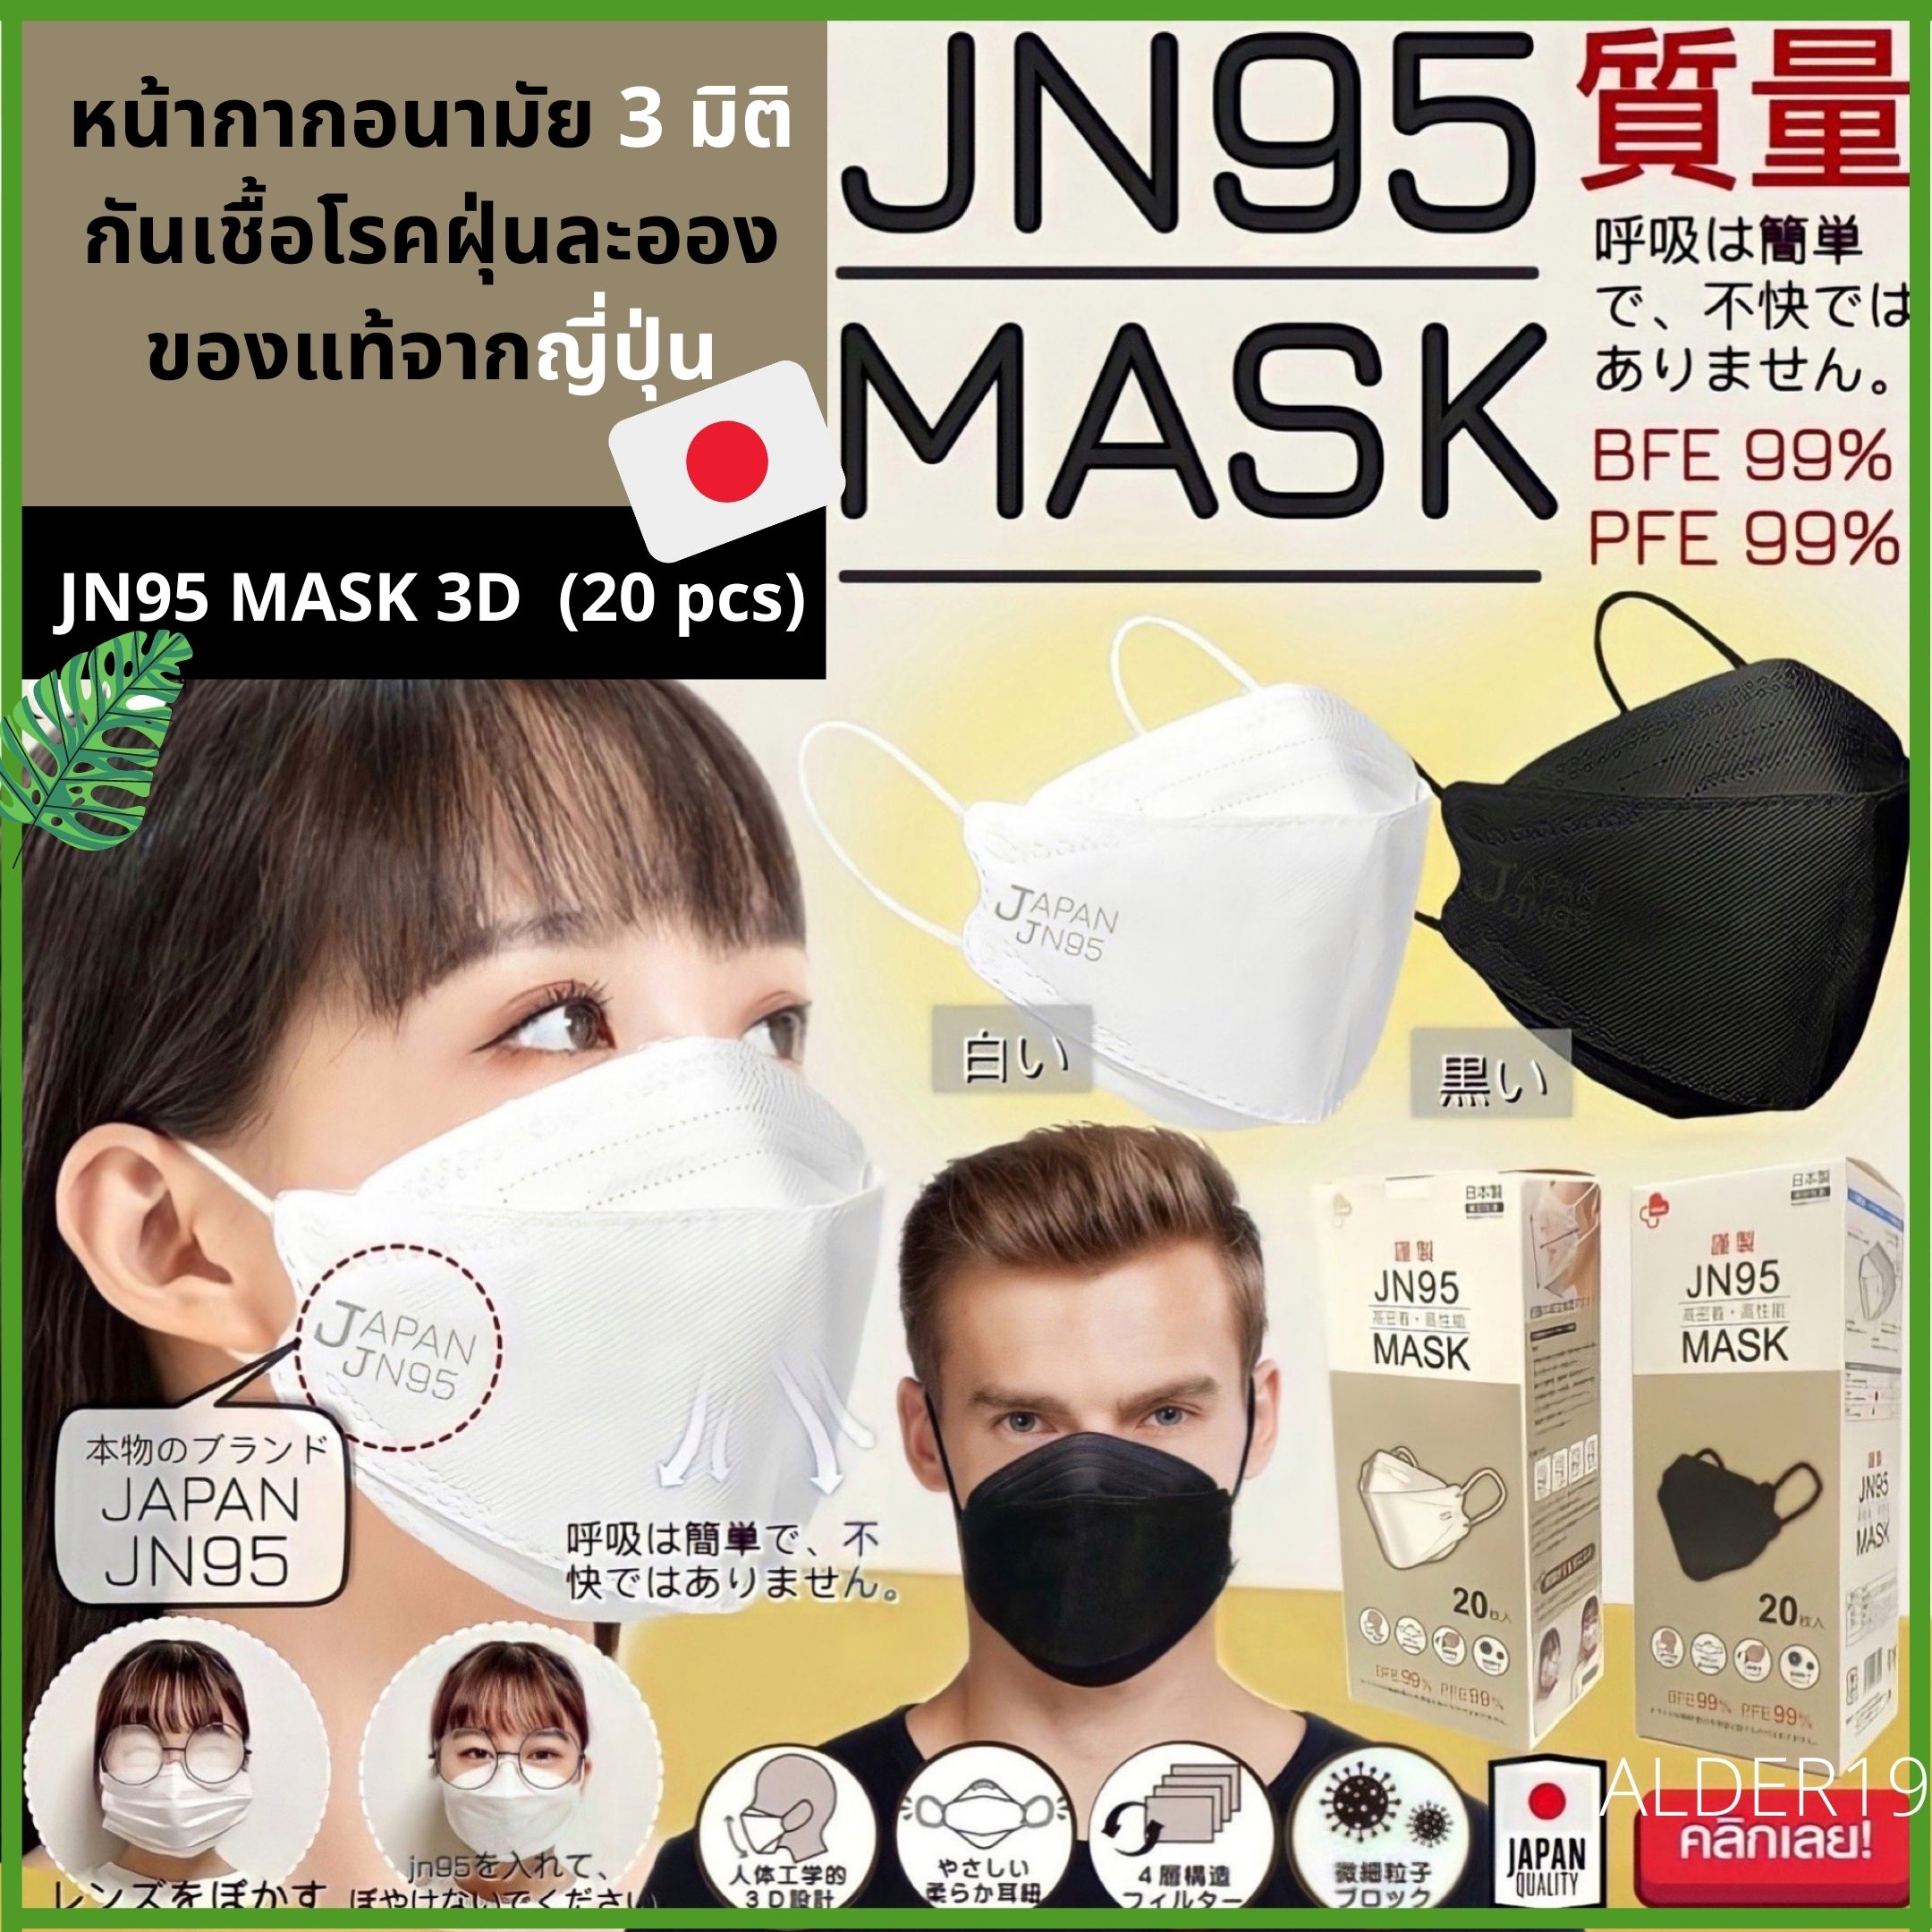 ALDER19 JN95 MASK 3D Japan Quality แมสก์ หน้ากากอนามัย 3มิติ ไม่เลอะหน้า กันเลอะ ไม่ติดหน้า ไม่เป็นฝ้า เหมาะสำหรับคน ใส่แว่น นำเข้าจากญี่ปุ่น กันเชื้อโรค ฝุ่นละออง พอกันที กับเครื่องสำอางติดแมสก์ 1 กล่องบรรจุ 20 ชิ้น